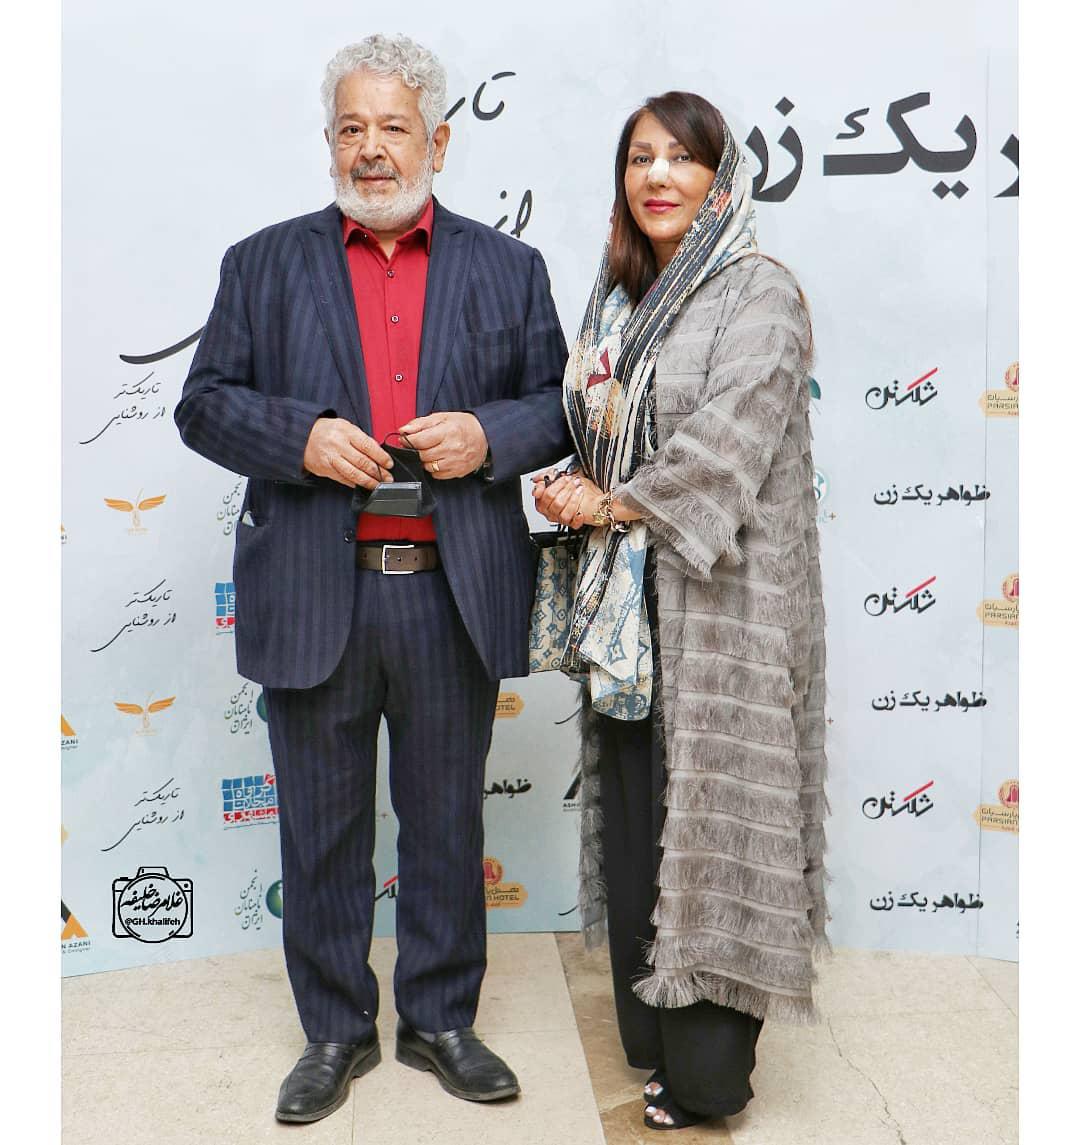 رضا فیاضی و همسرش در مراسم اکران یک فیلم + عکس